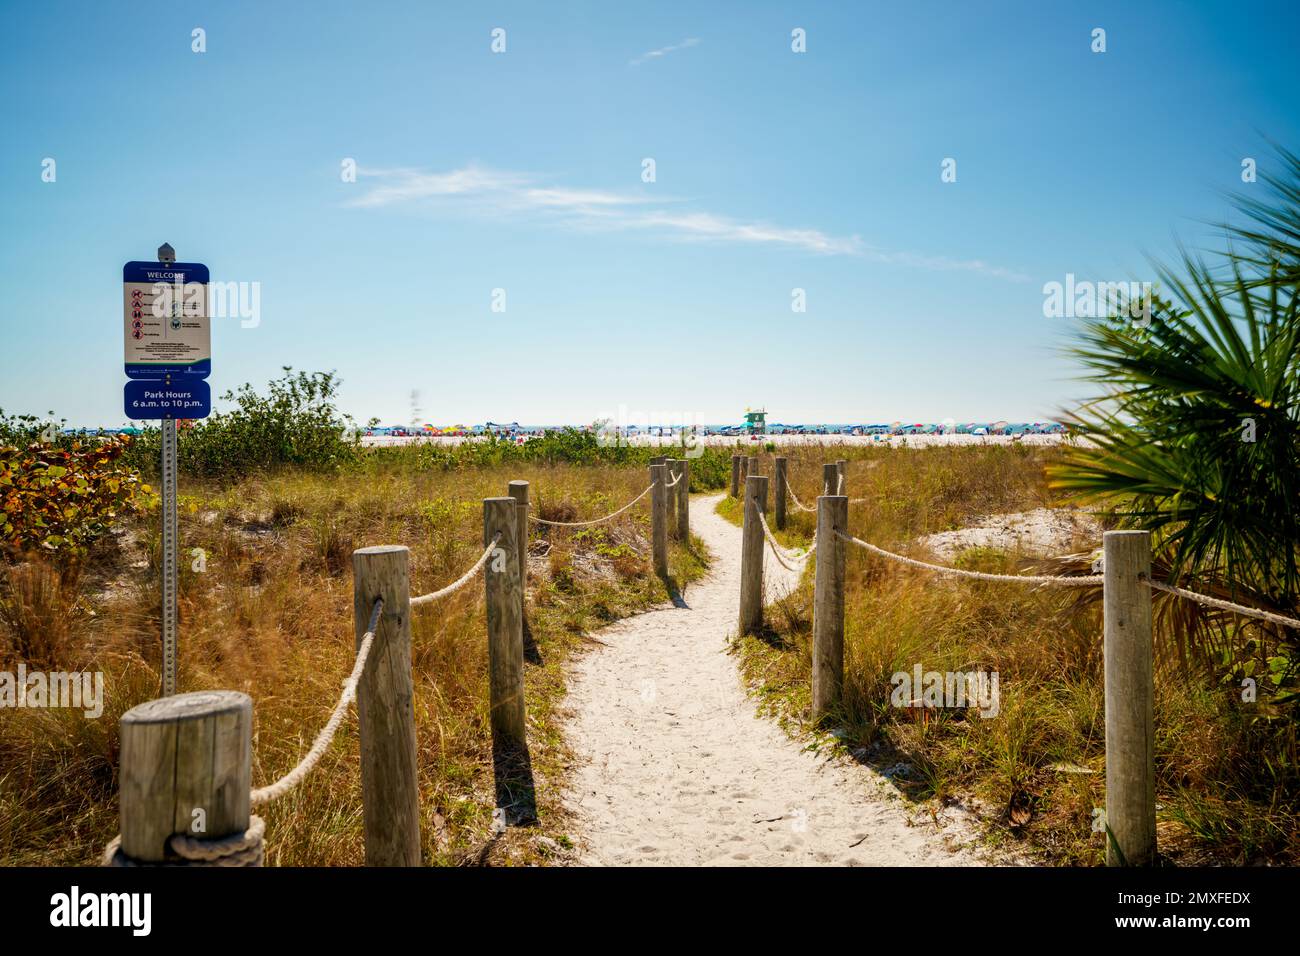 Foto a lunga esposizione della scena di Siesta Key Beach con sfocatura del movimento negli alberi Foto Stock